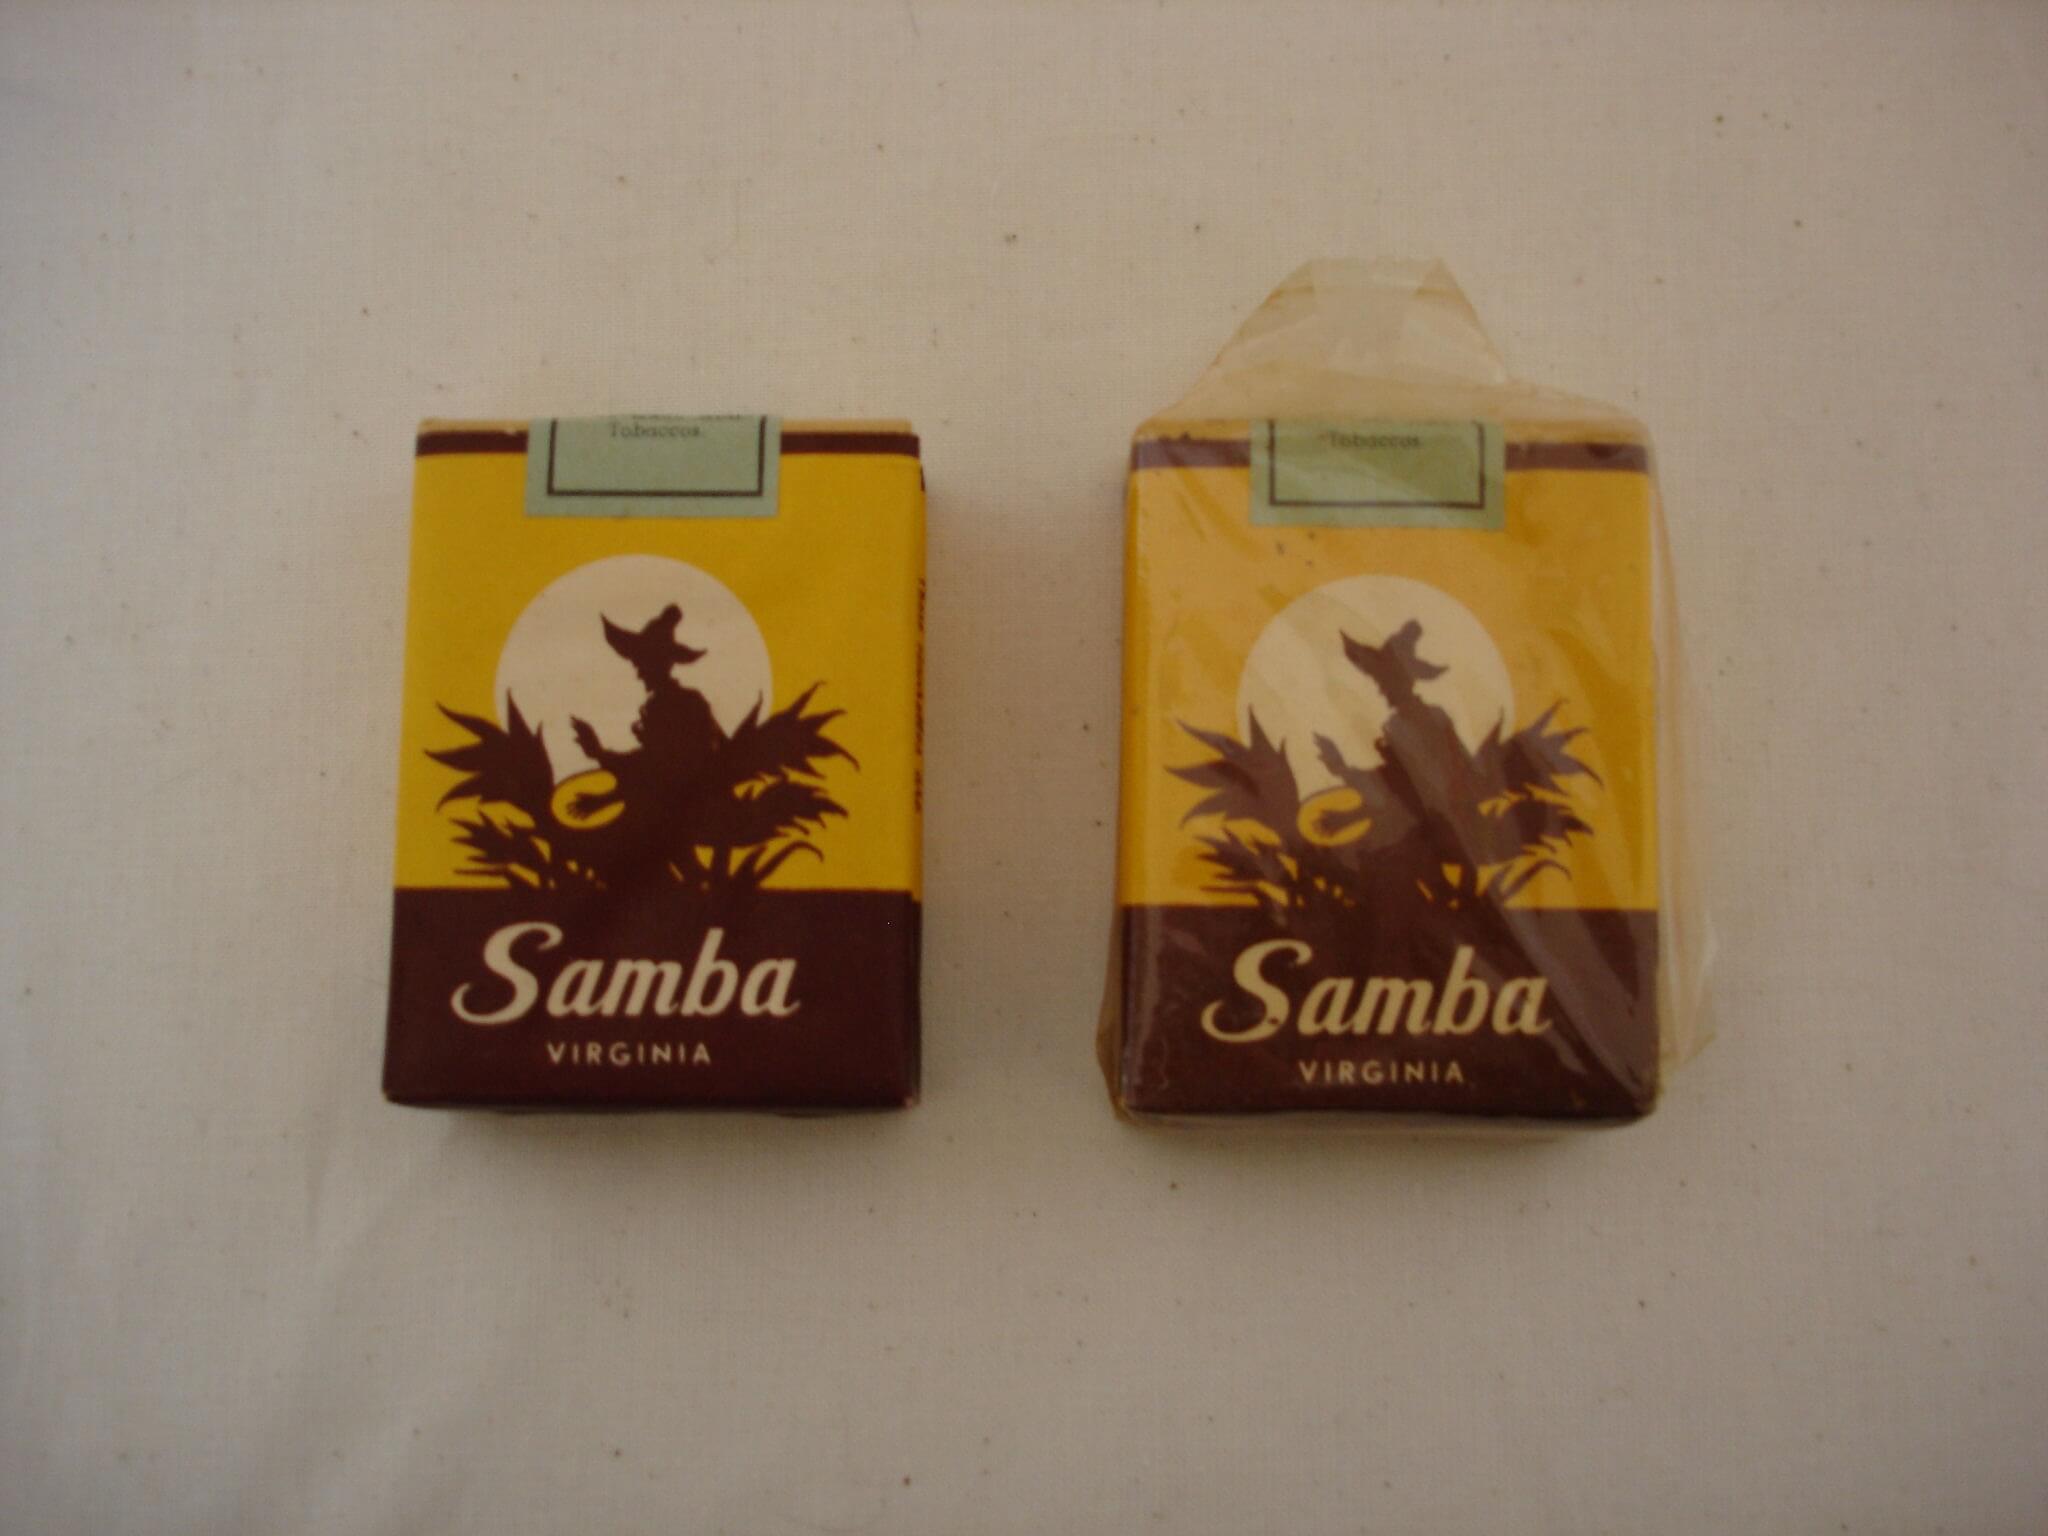 Samba sigaretten uit de tweede wereldoorlog wo2